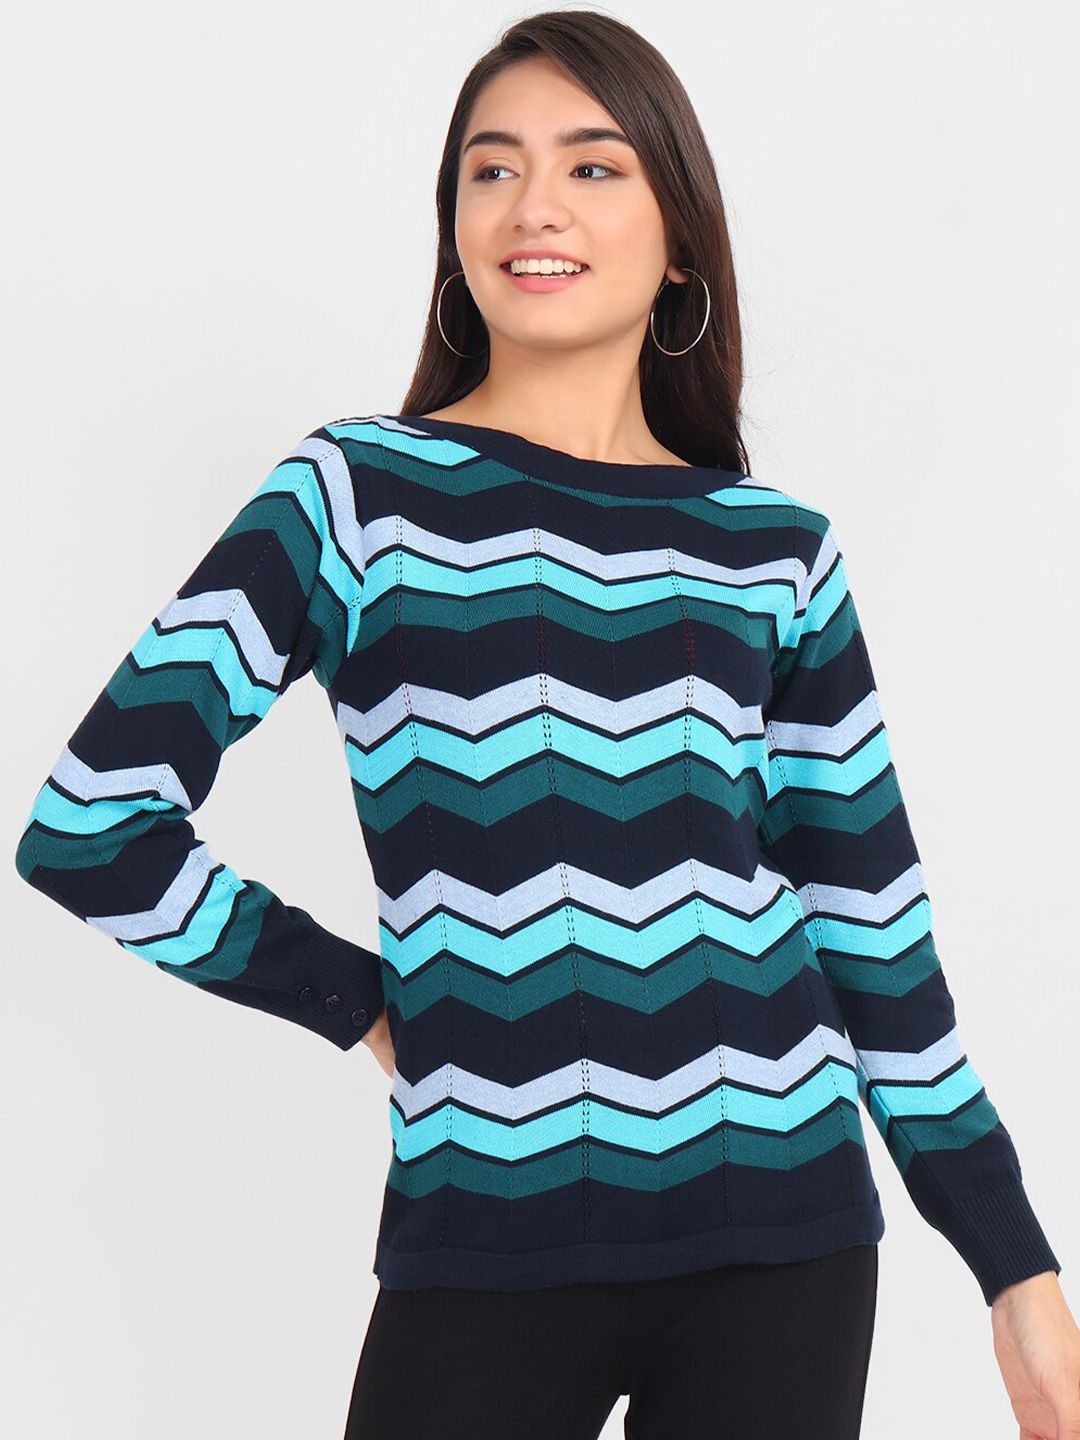 JoE Hazel Women Black & Blue Geometric Patterned Pullover Sweatshirt Price in India